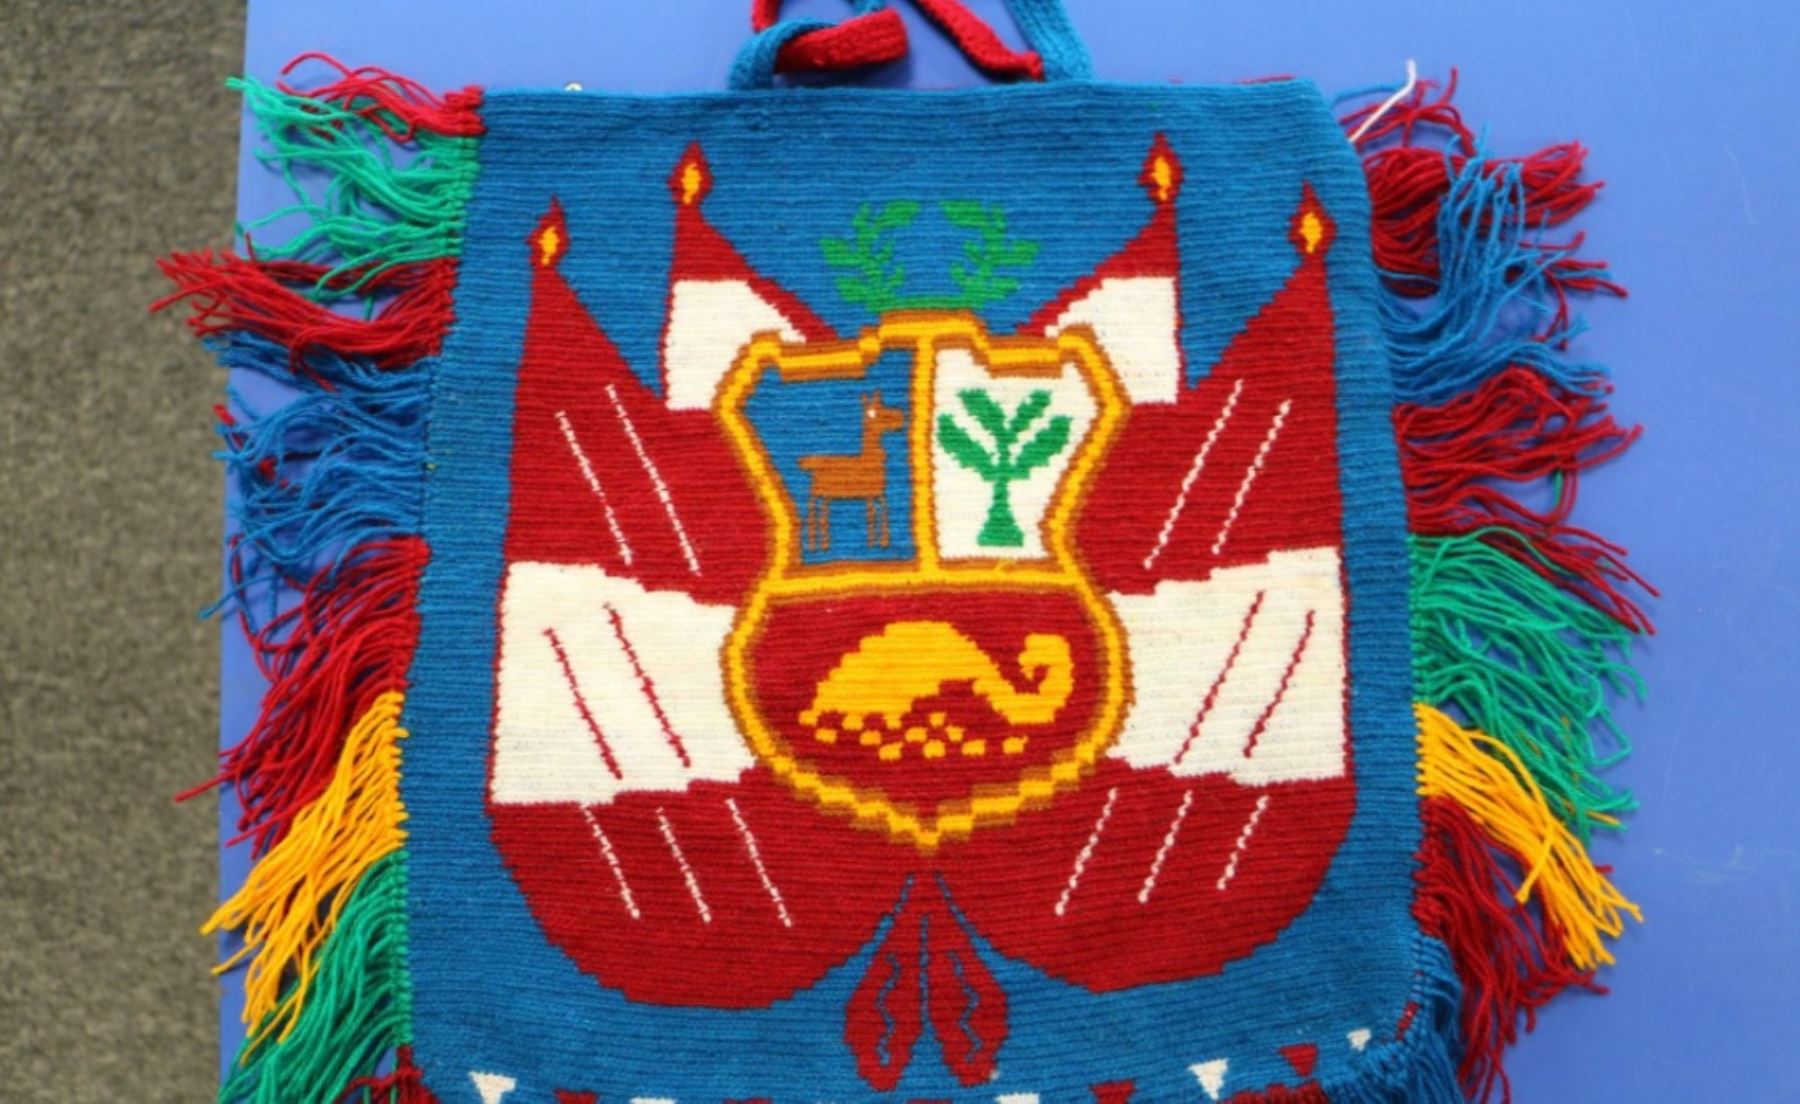 “Ruraq Maki: Hecho a Mano”, la feria artesanal más importante del Perú que este año reúne en la sala Kuélap a 130 colectivos de maestros artesanos en una exposición venta de su arte popular y tradicional.